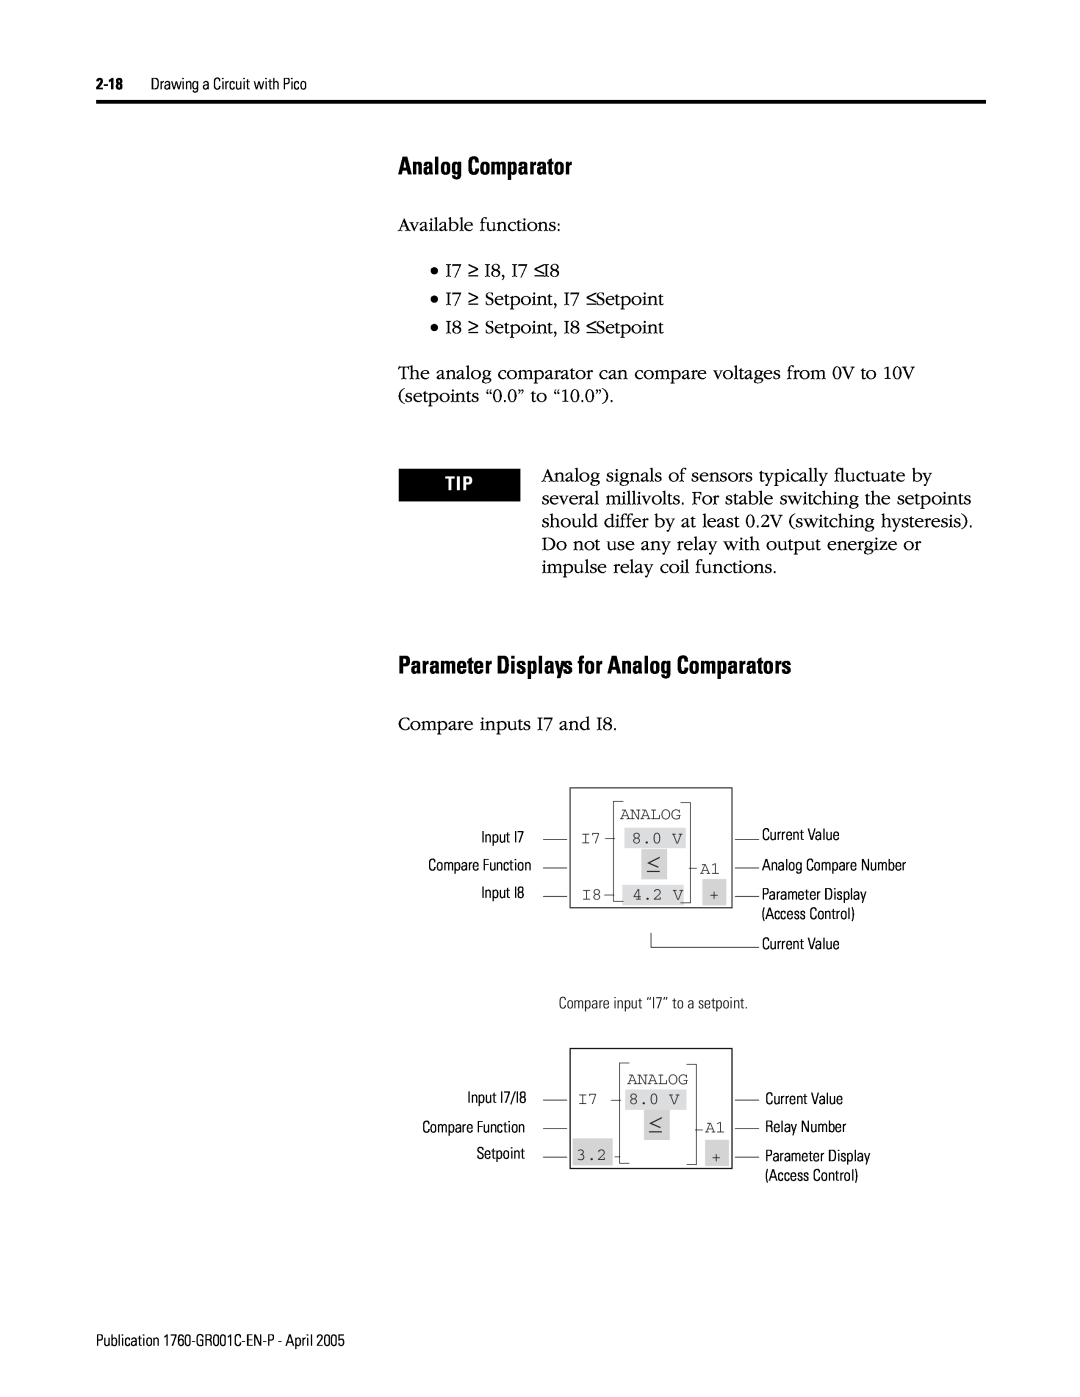 AB Soft 1760 manual Parameter Displays for Analog Comparators 